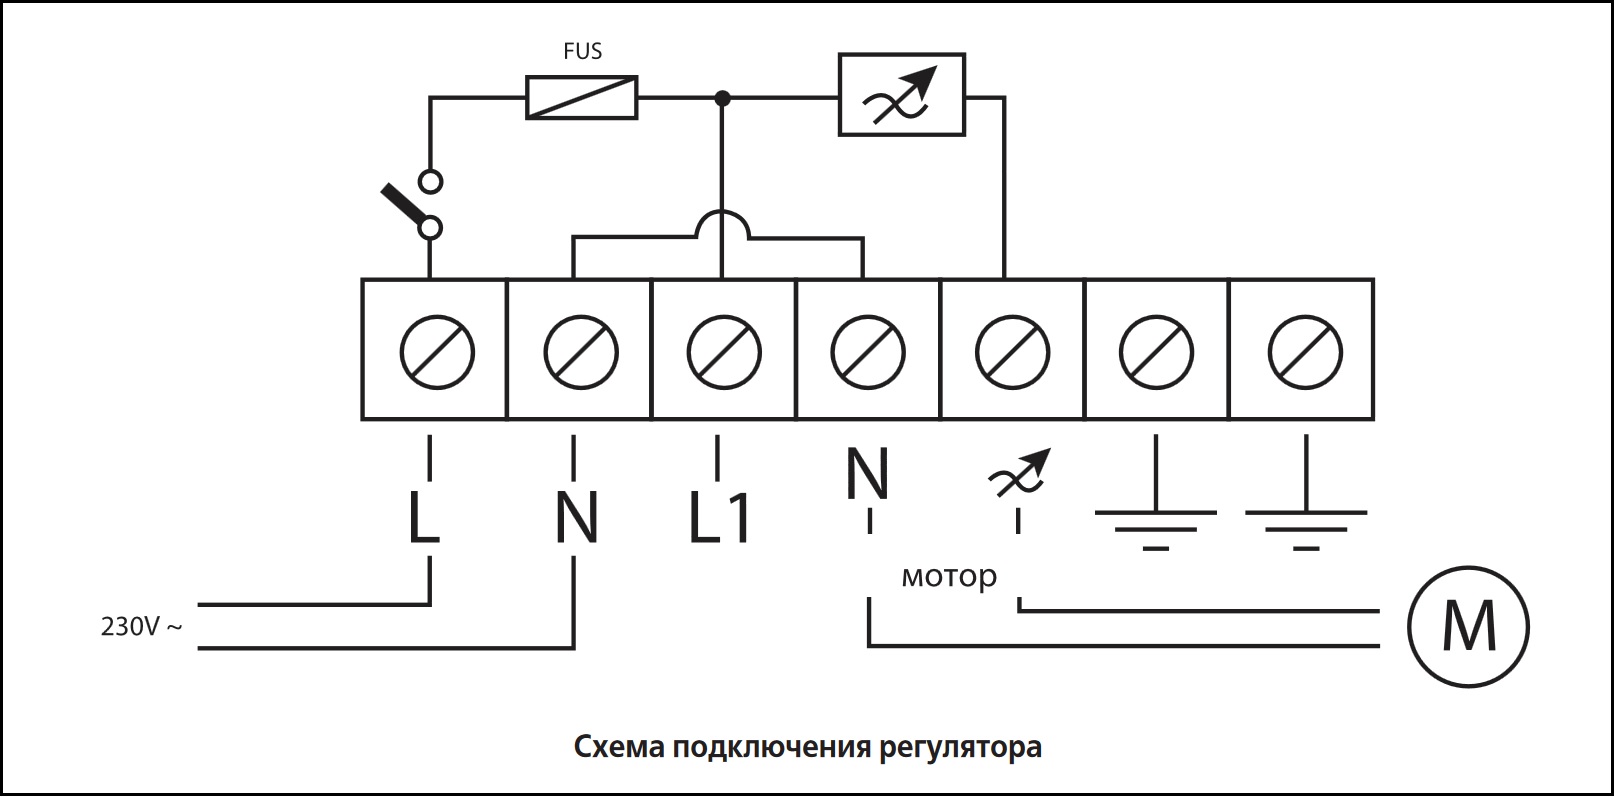 Схема подключения регулятора скорости ВЕНТС РС-10,0-Т